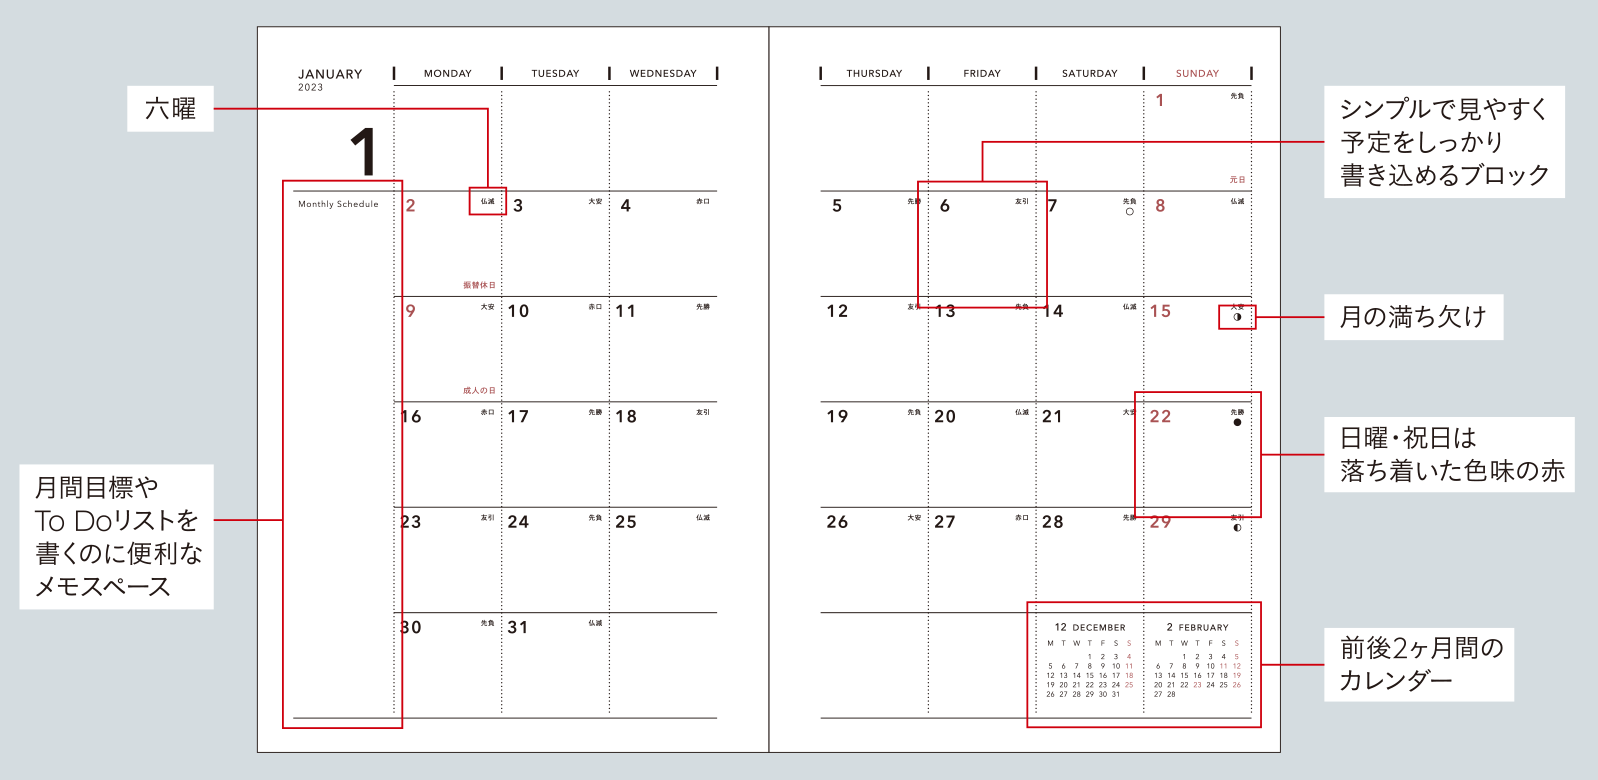 [カレンダー見開き]月の満ち欠け、月間目標やTo Doリストを書くのに便利なメモスペース、六曜、シンプルで見やすく予定をしっかり書き込めるブロック、日曜・祝日は落ち着いた色味の赤、前後2ヶ月間のカレンダー